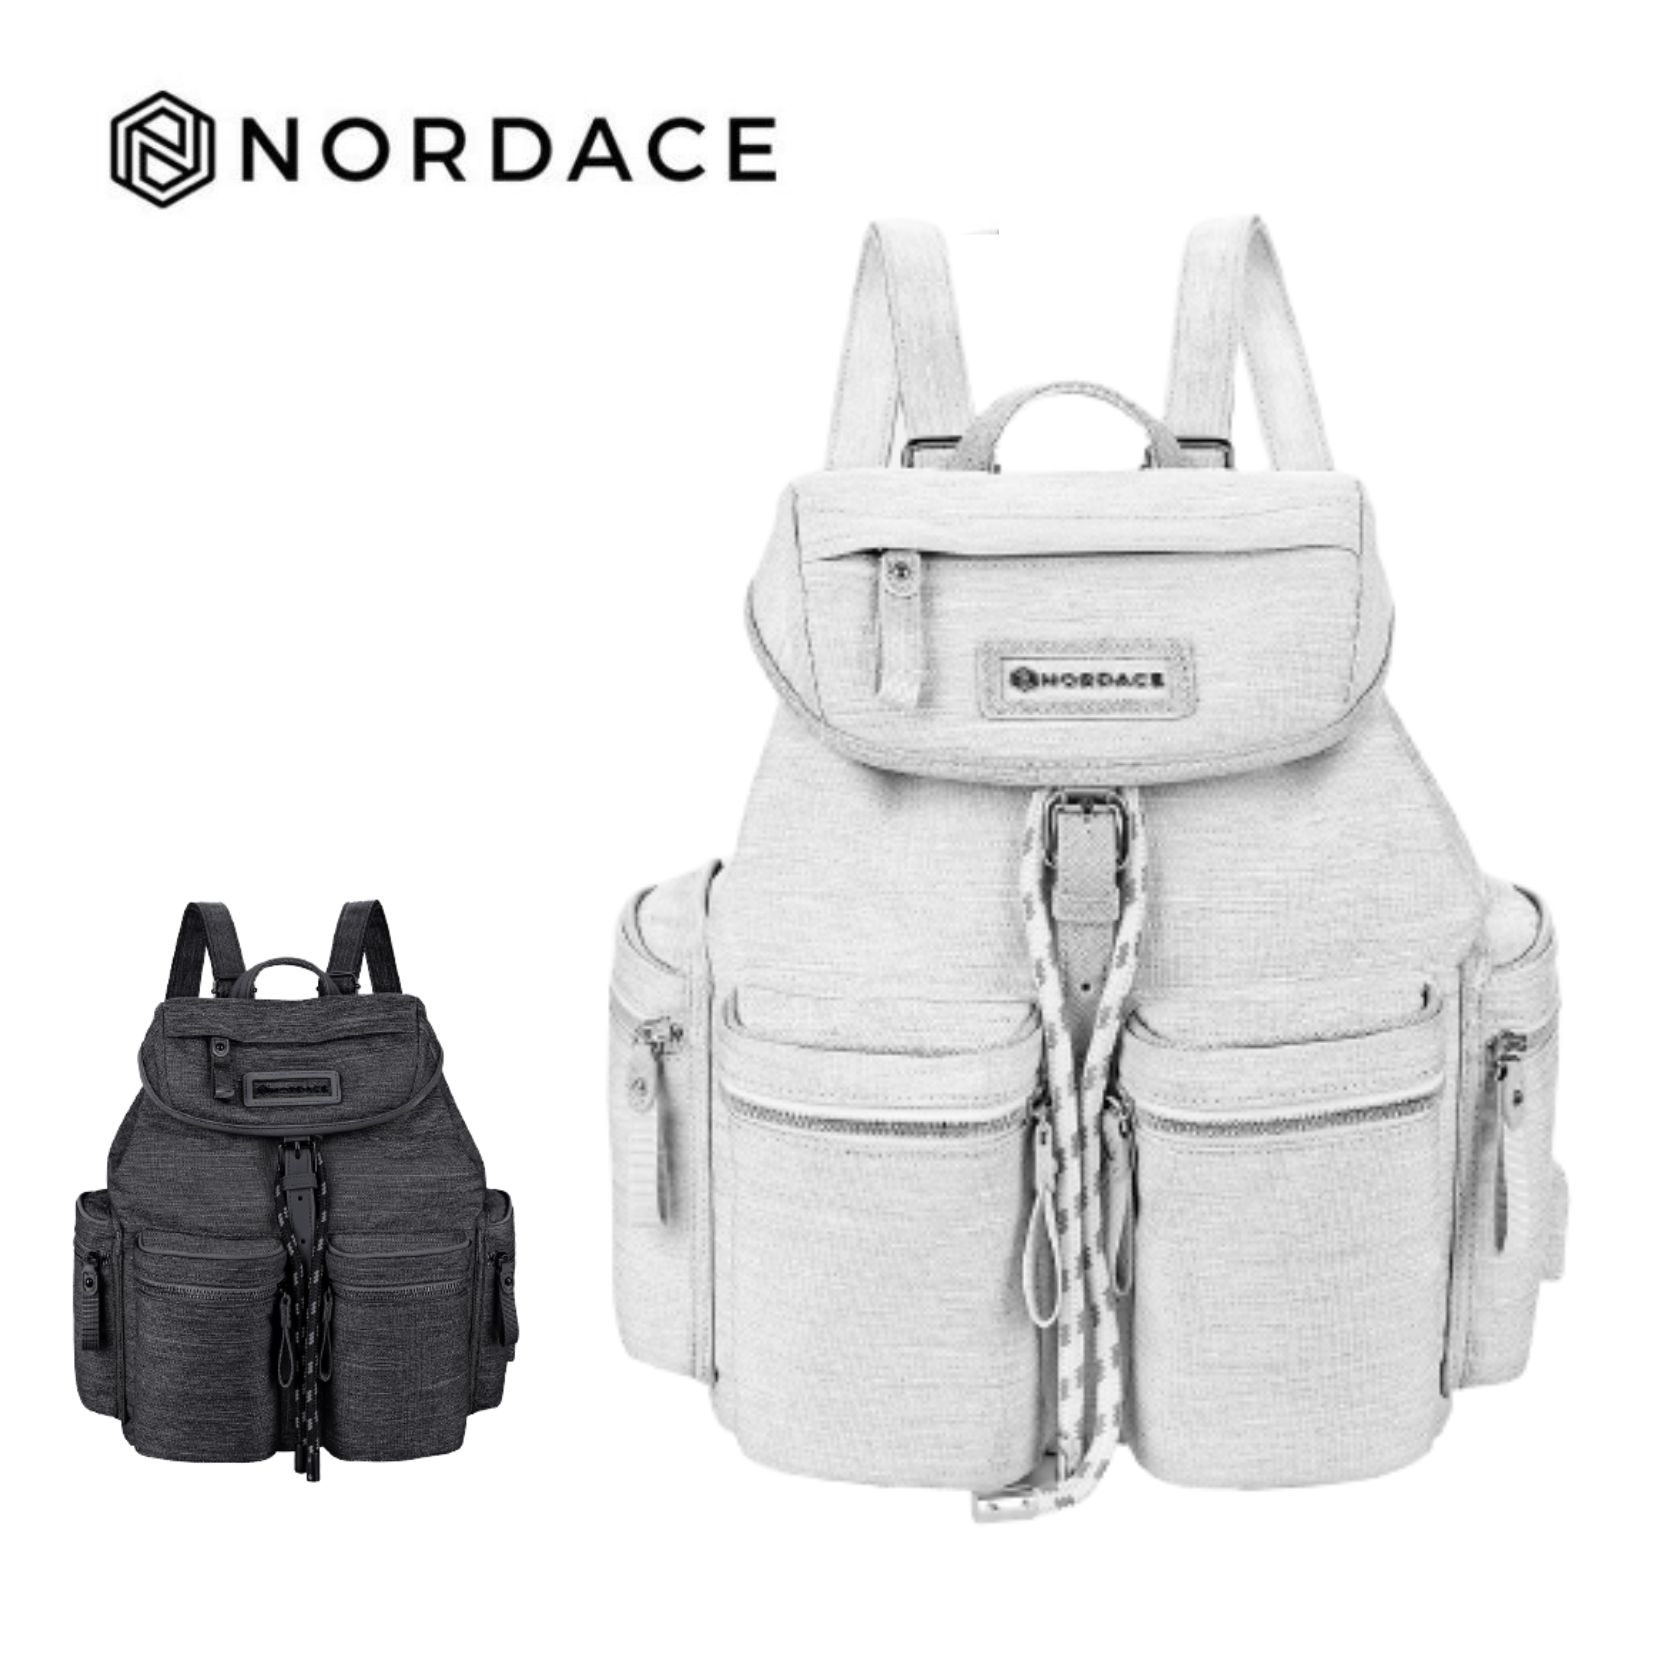 Nordace Comino 迷你日用背包 旅行 後背包 背包 收納包 雙肩包 大容量 輕巧 耐重 休閒 多功能 -灰色